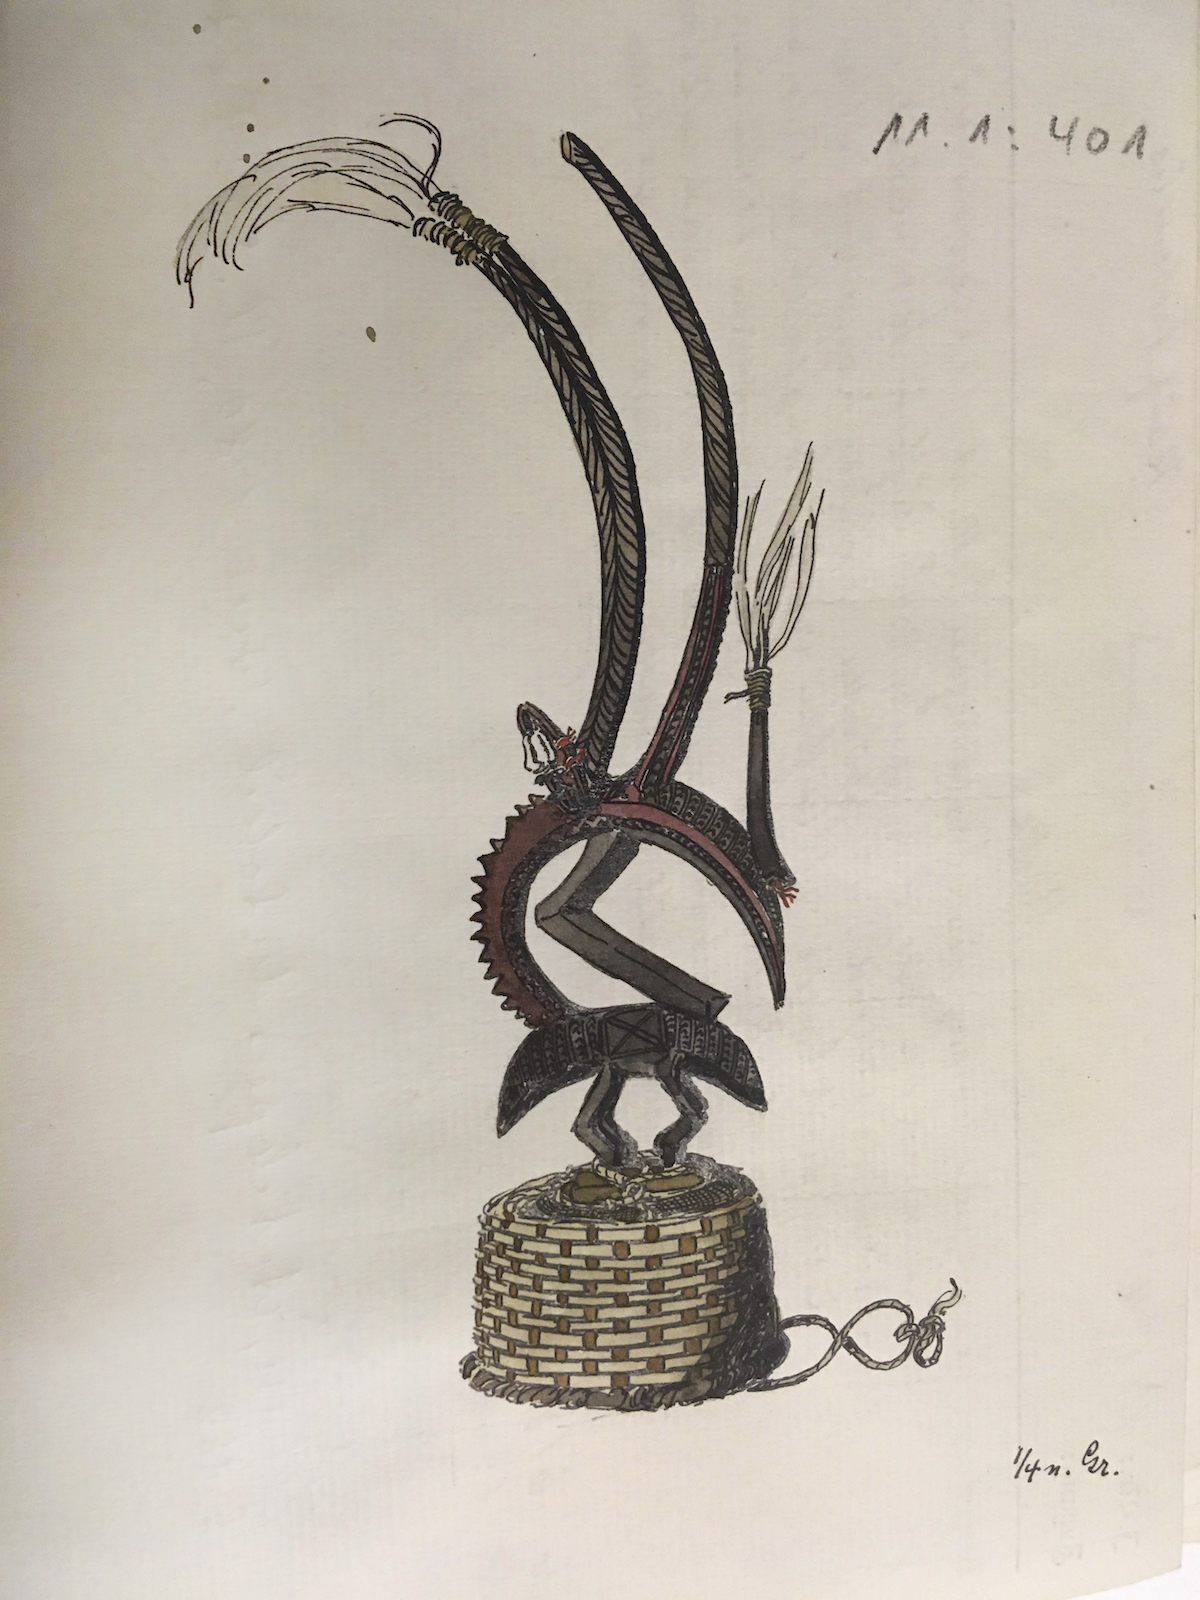 Inventarkartenzeichnung eines Maskenaufsatzes aus Mali, Federzeichnung auf Büttenpapier, aquarelliert, Museum am Rothenbaum, Hamburg, undatiert